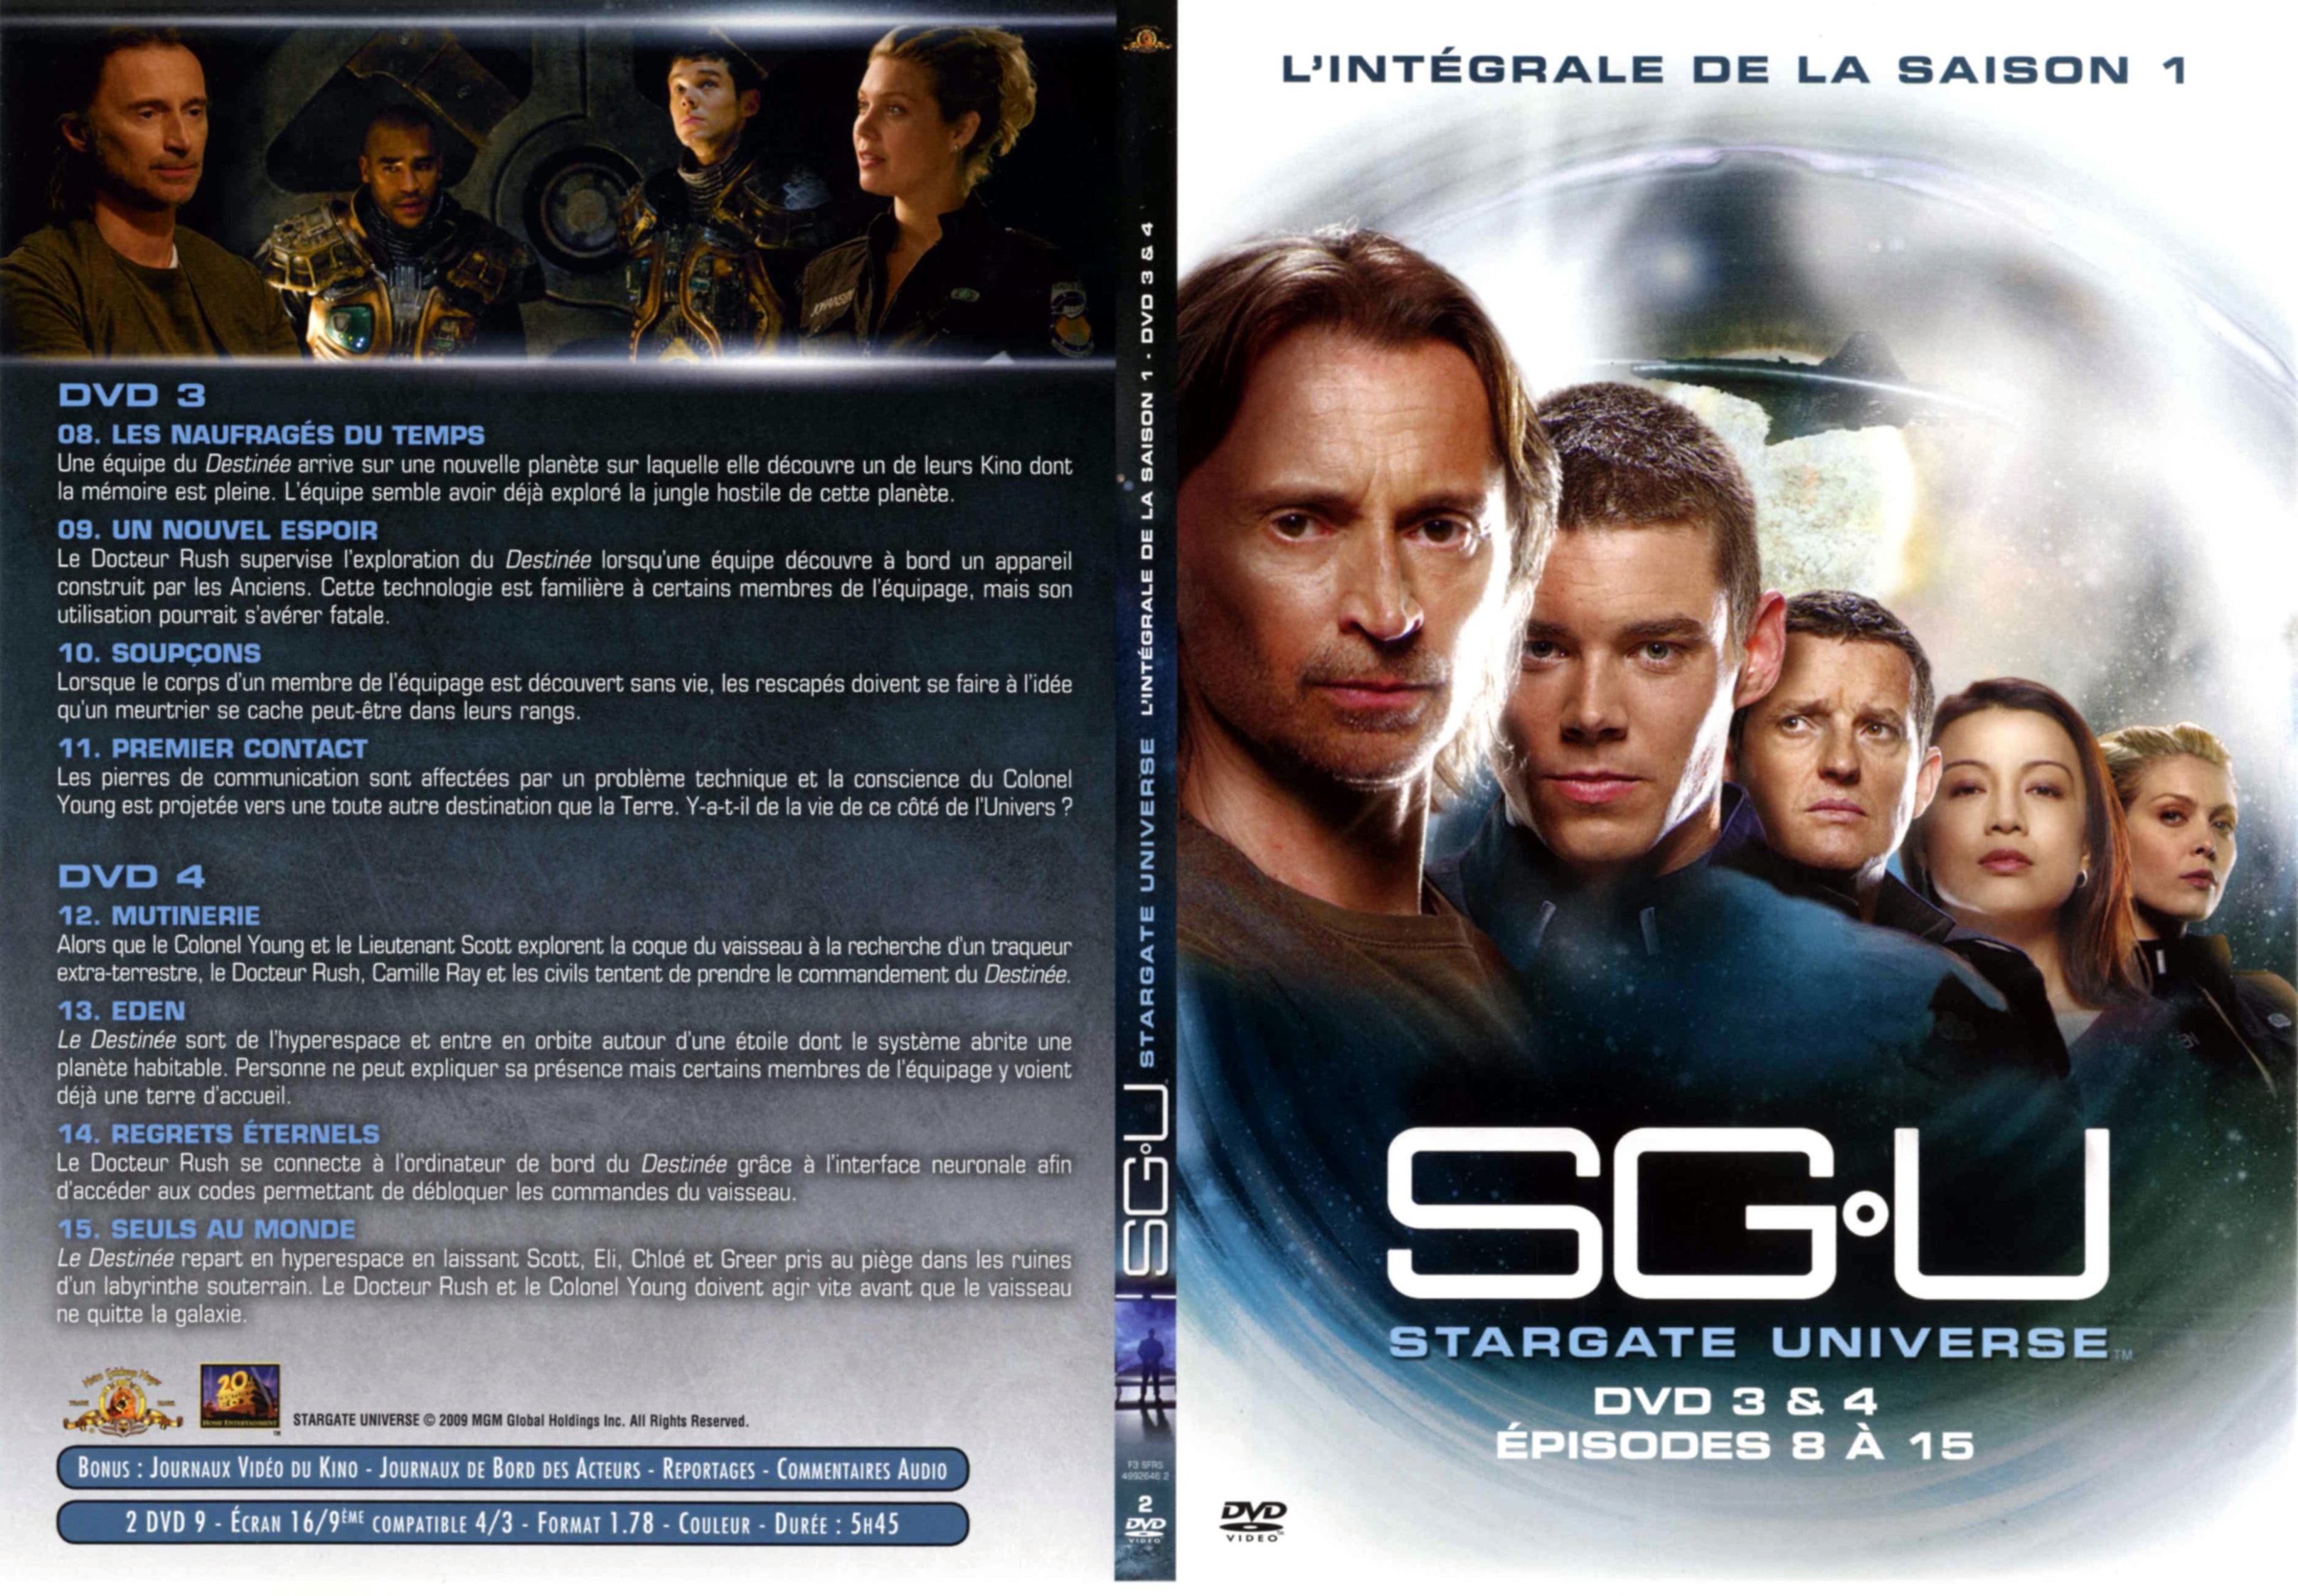 Jaquette DVD Stargate Universe Saison 1 DVD 2